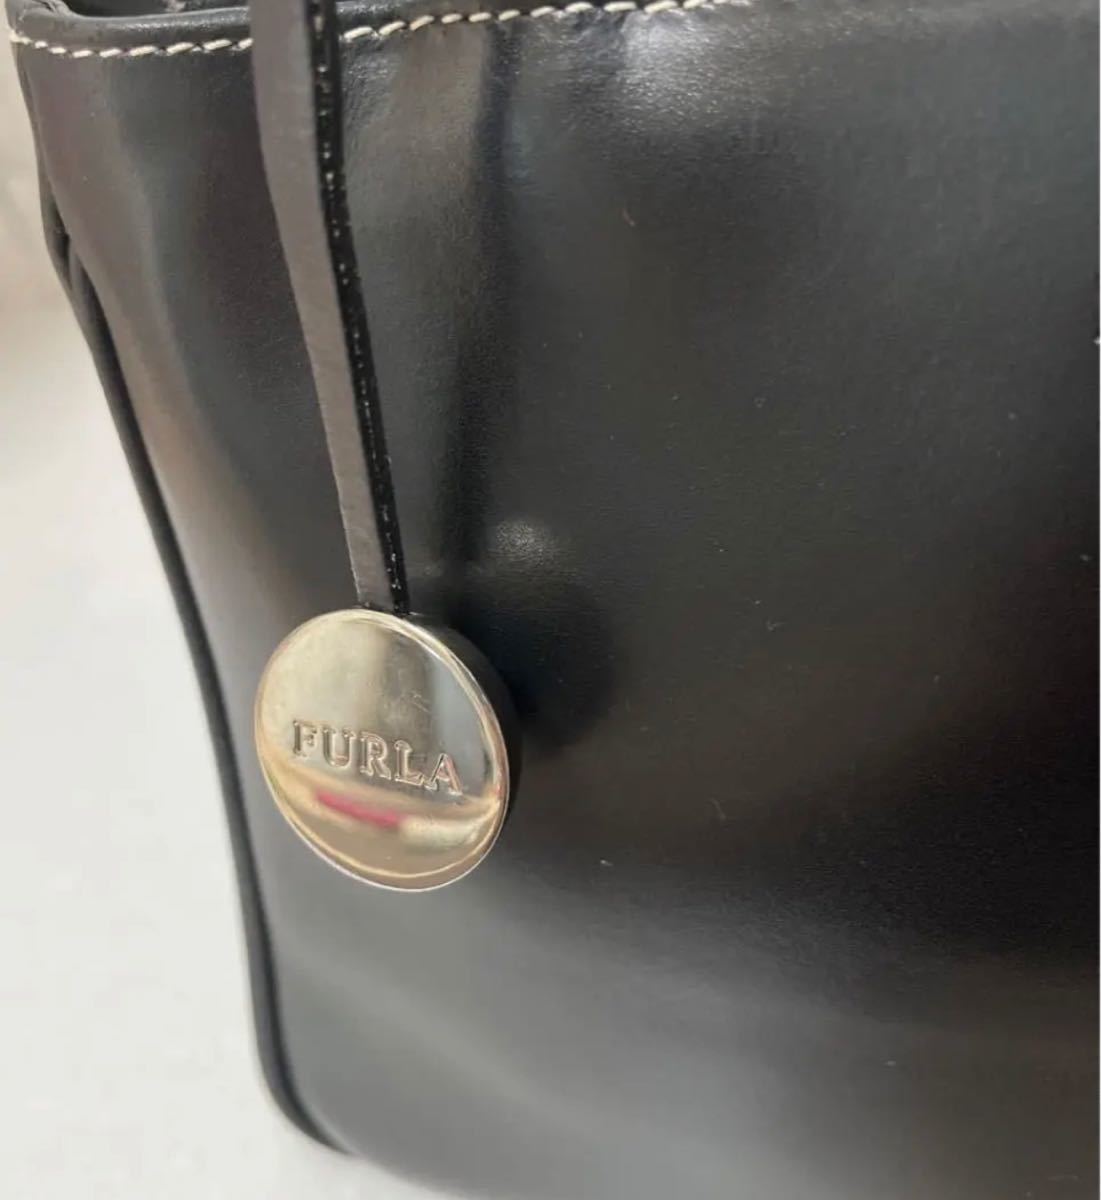 FURLA フルラ ショルダーバッグ ハンドバッグ 2way 斜め掛け レザー 革 Genuine Leather ブラック チャーム付 匿名配送 送料無料